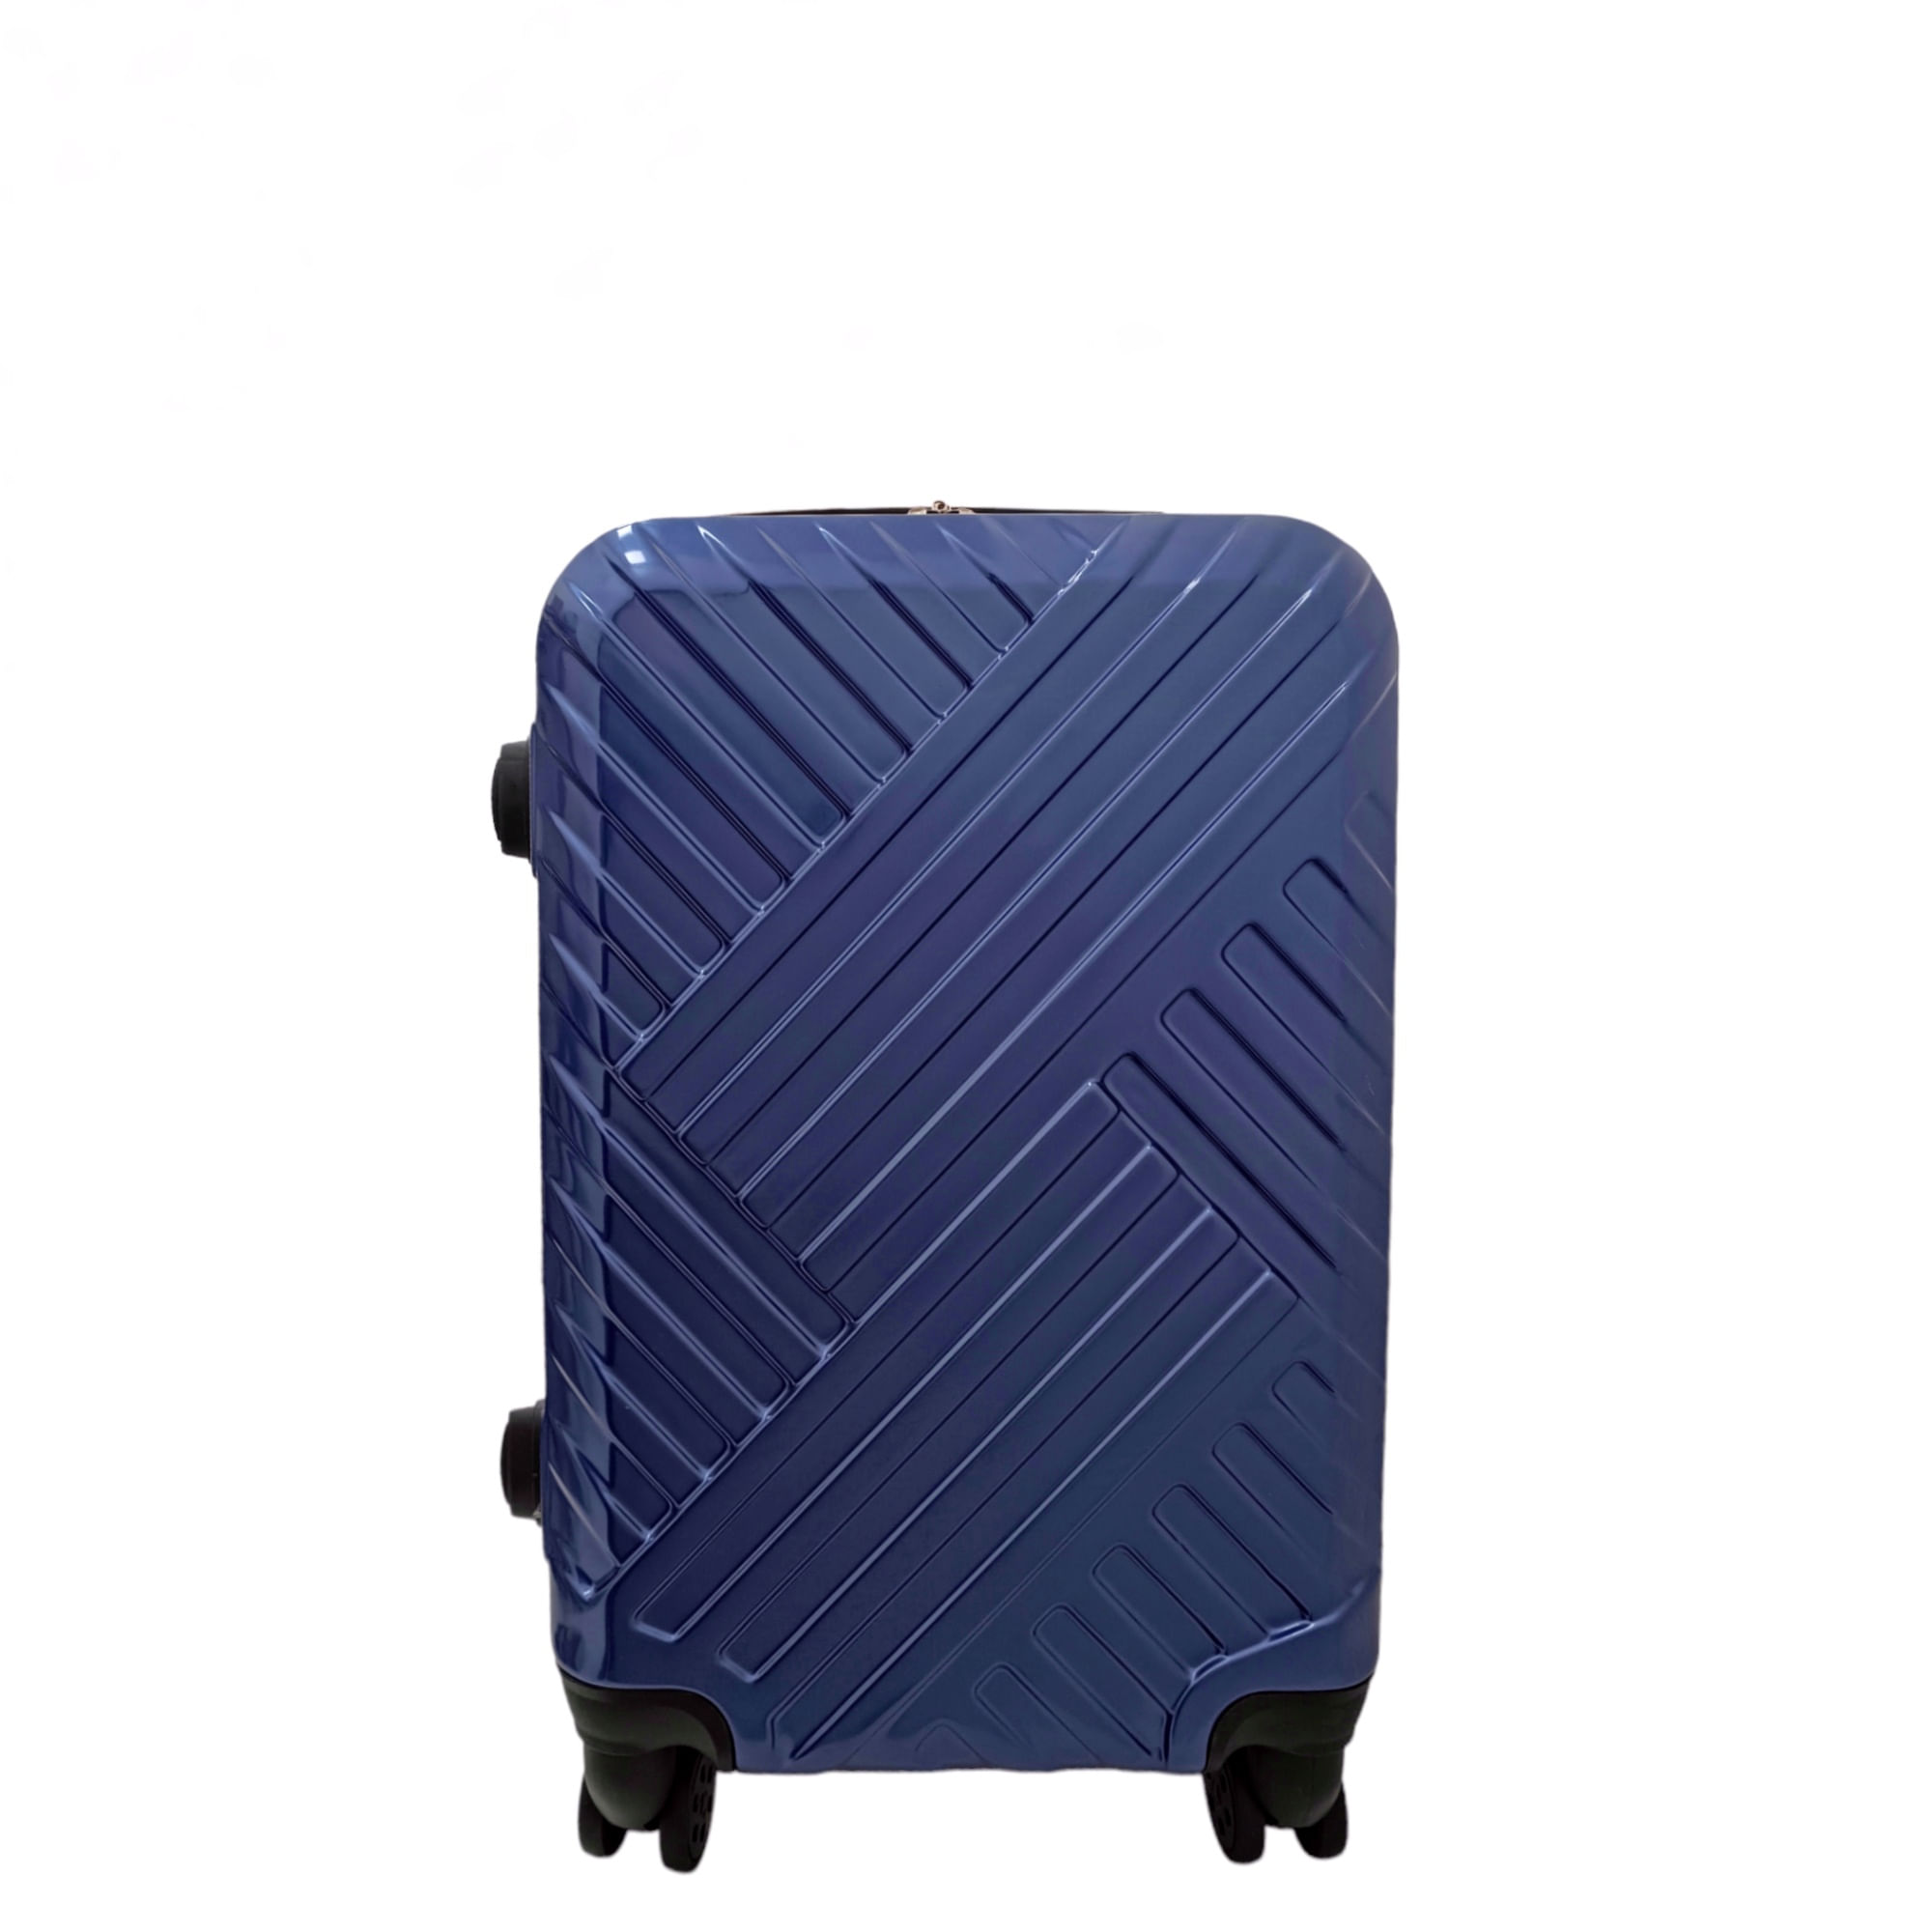 maleta pequeña zurich - Azul y mora - Tienda de maletas bolsos y mochilas